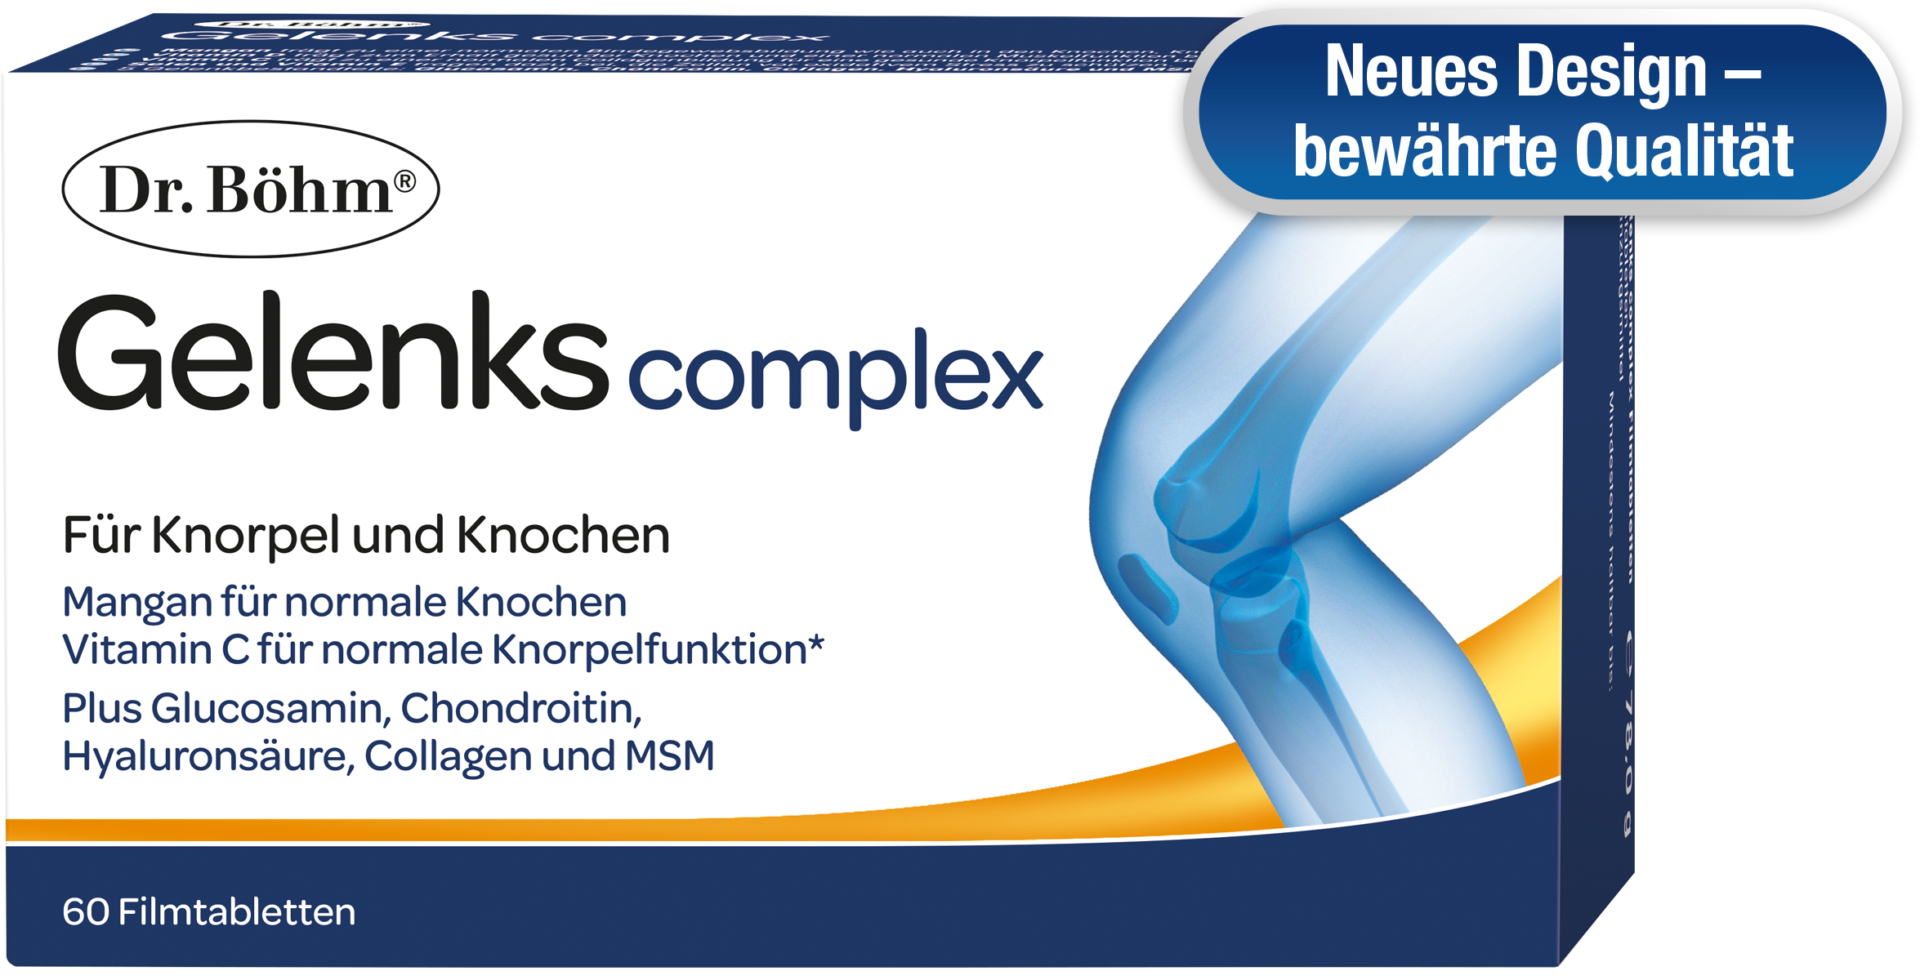 Neues Design - bewährte Qualität - Dr. Böhm® Gelenks complex für Knorpel und Knochen